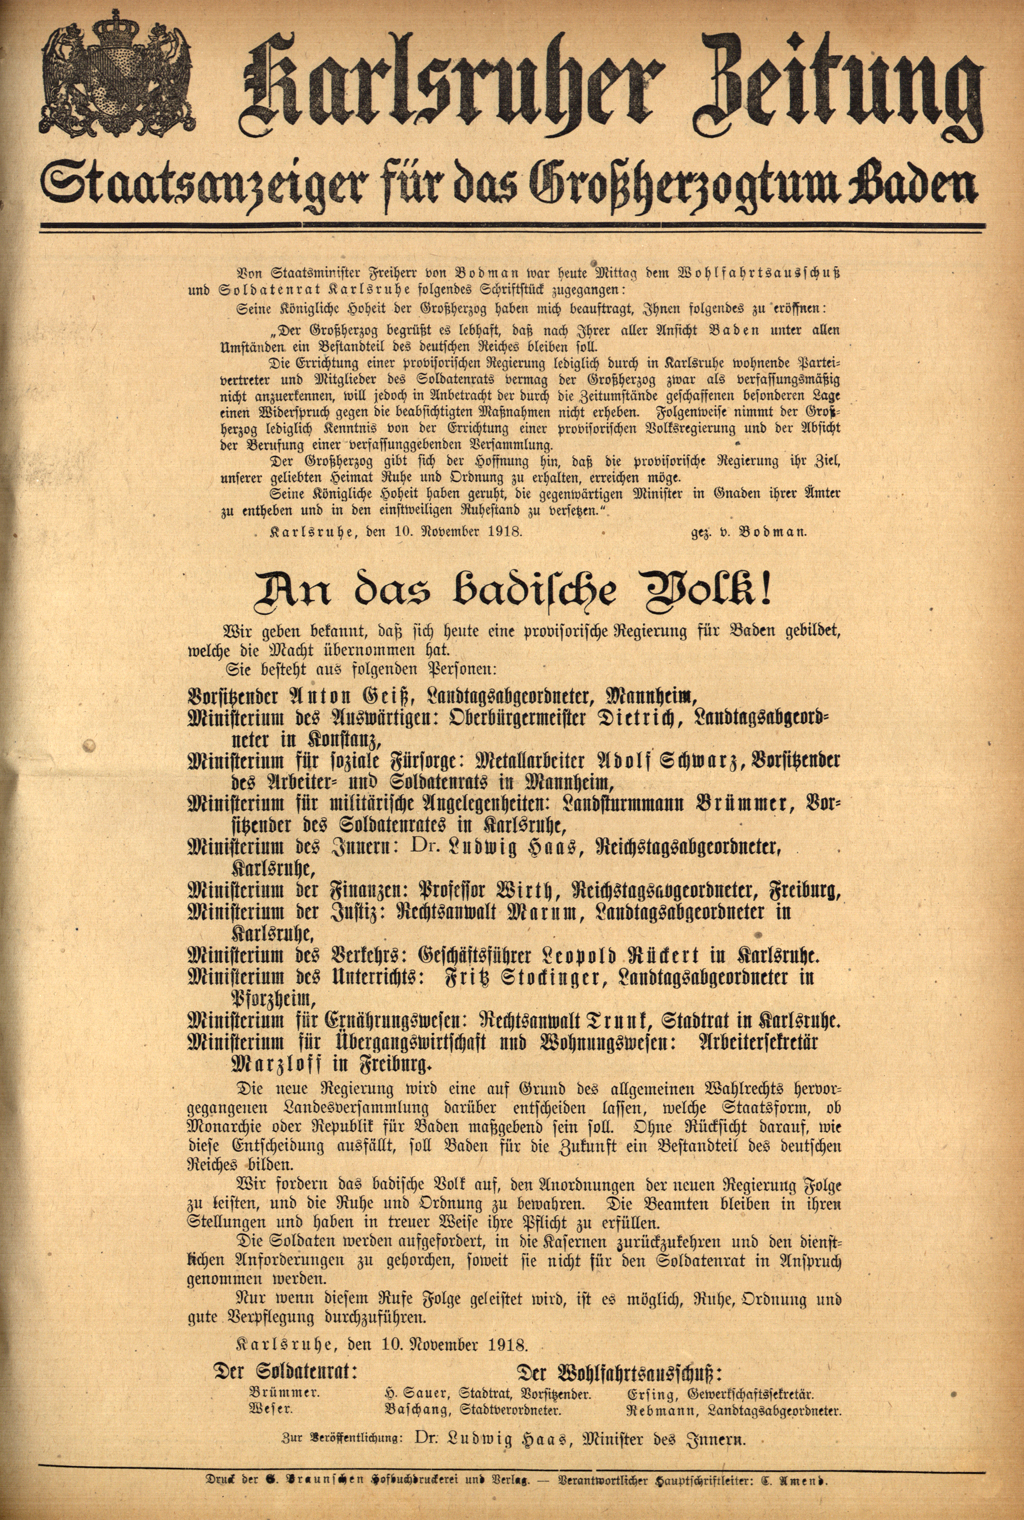 Zu sehen ist die erste Seite der Karlsruher Zeitung vom 14. November 1918 mit der Proklamation des Thronverzichts durch den Großherzog von Baden.